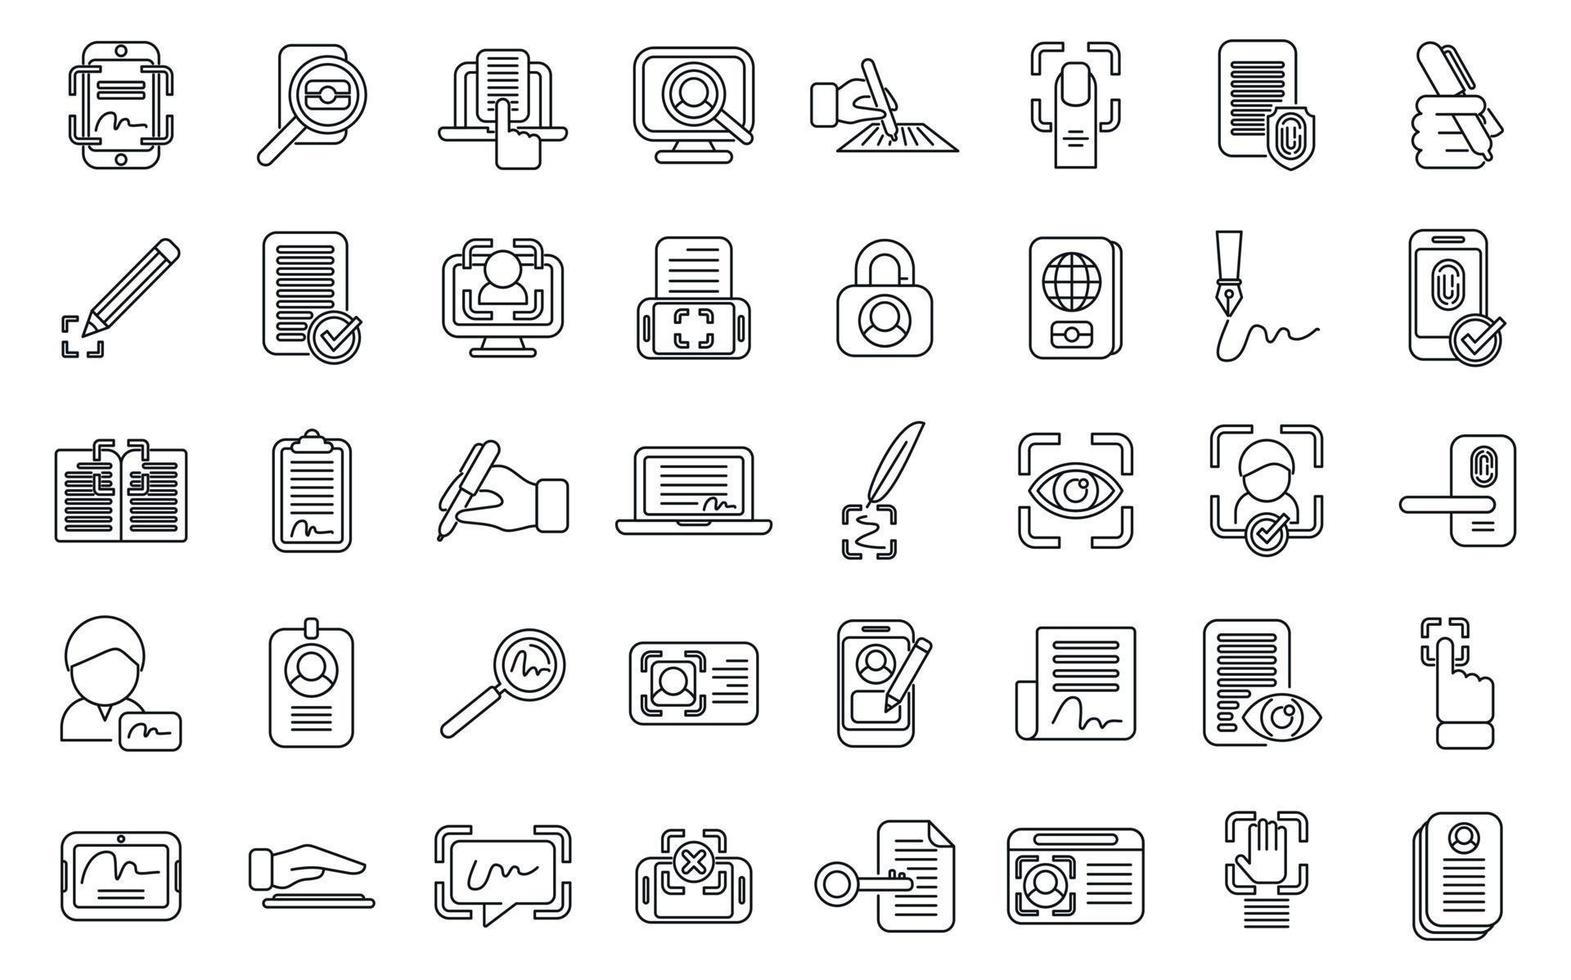 conjunto de iconos de identificación de escritura a mano vector de contorno. acceder aprobar